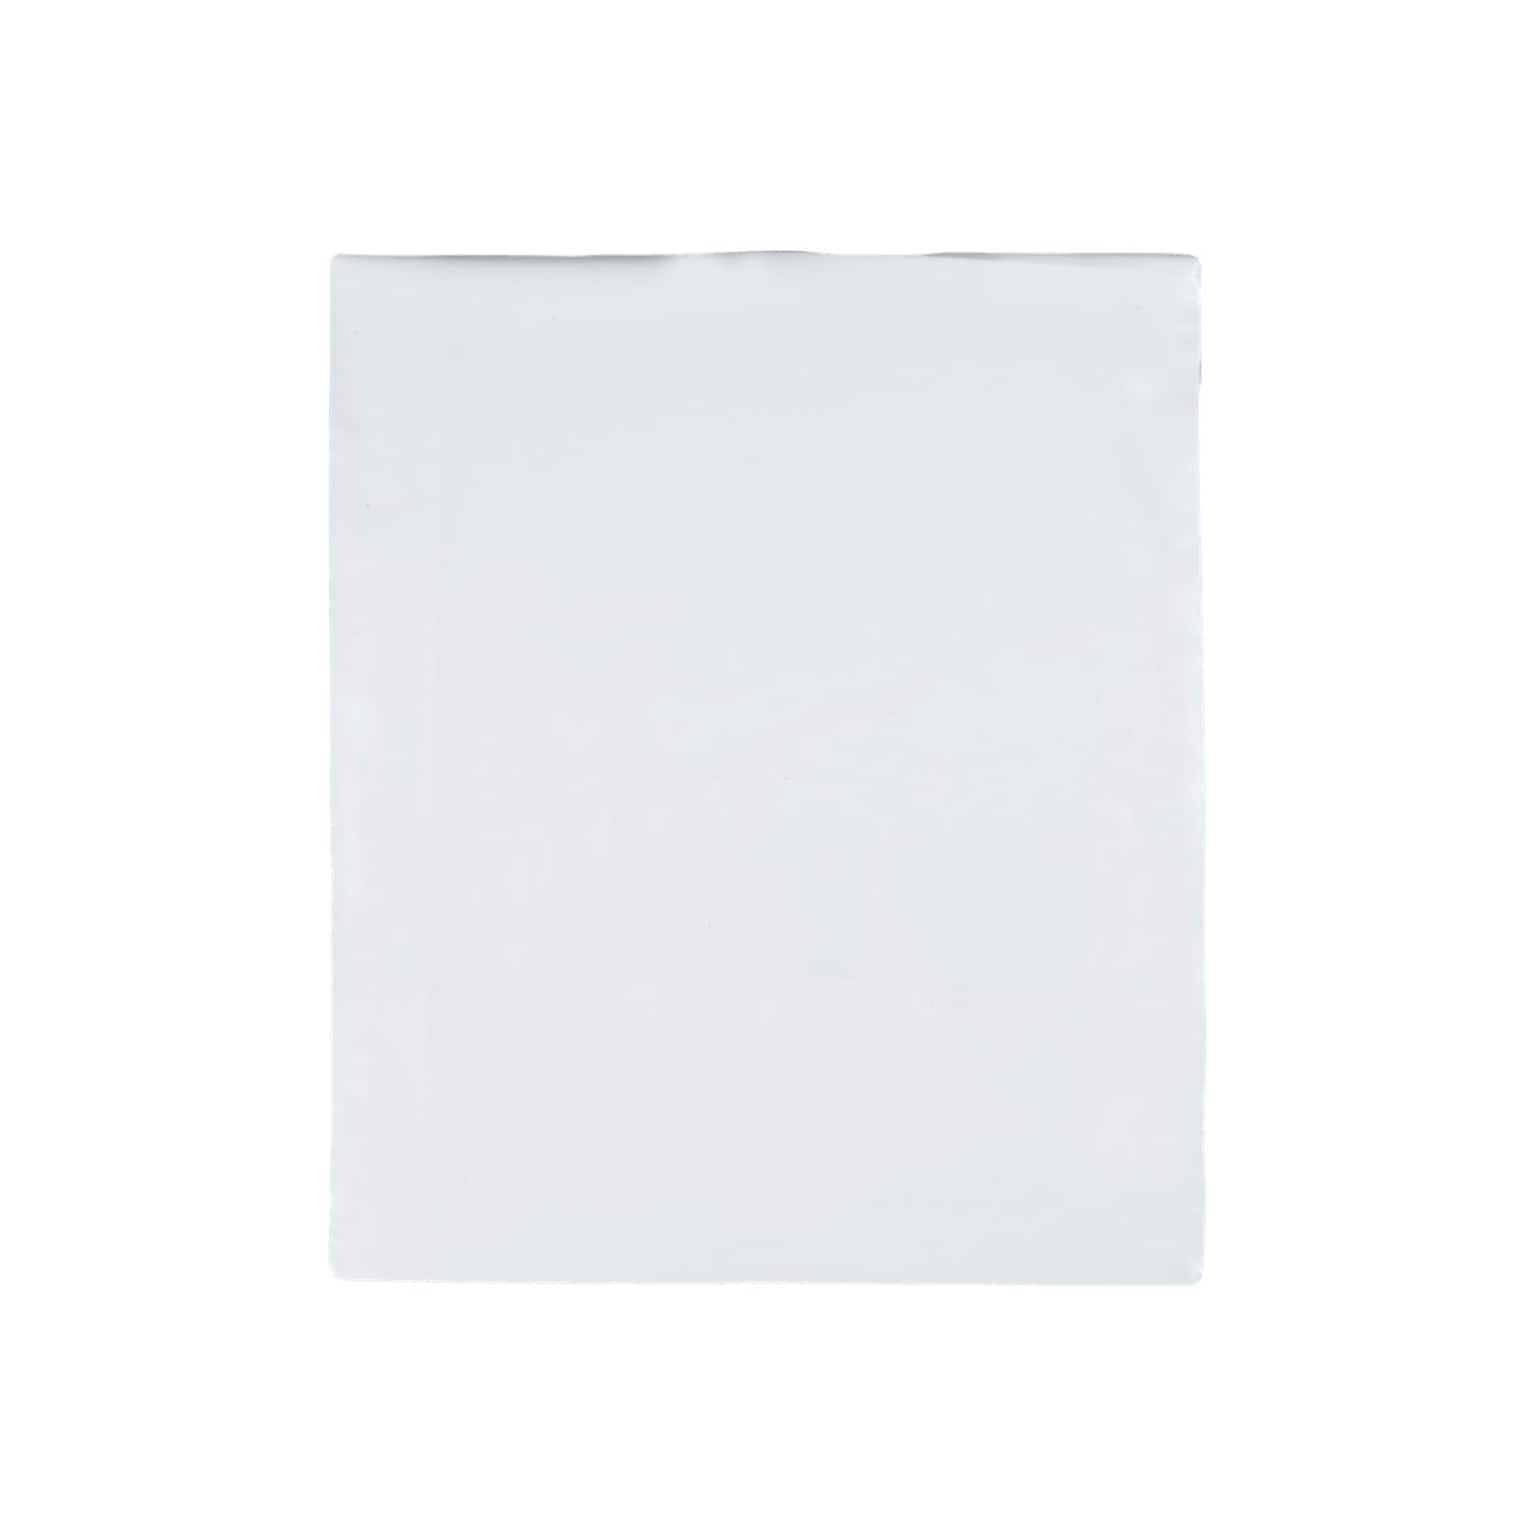 11W x 13L Redi-Strip Expansion Poly Mailers, White, 100/Box (QUA46390)